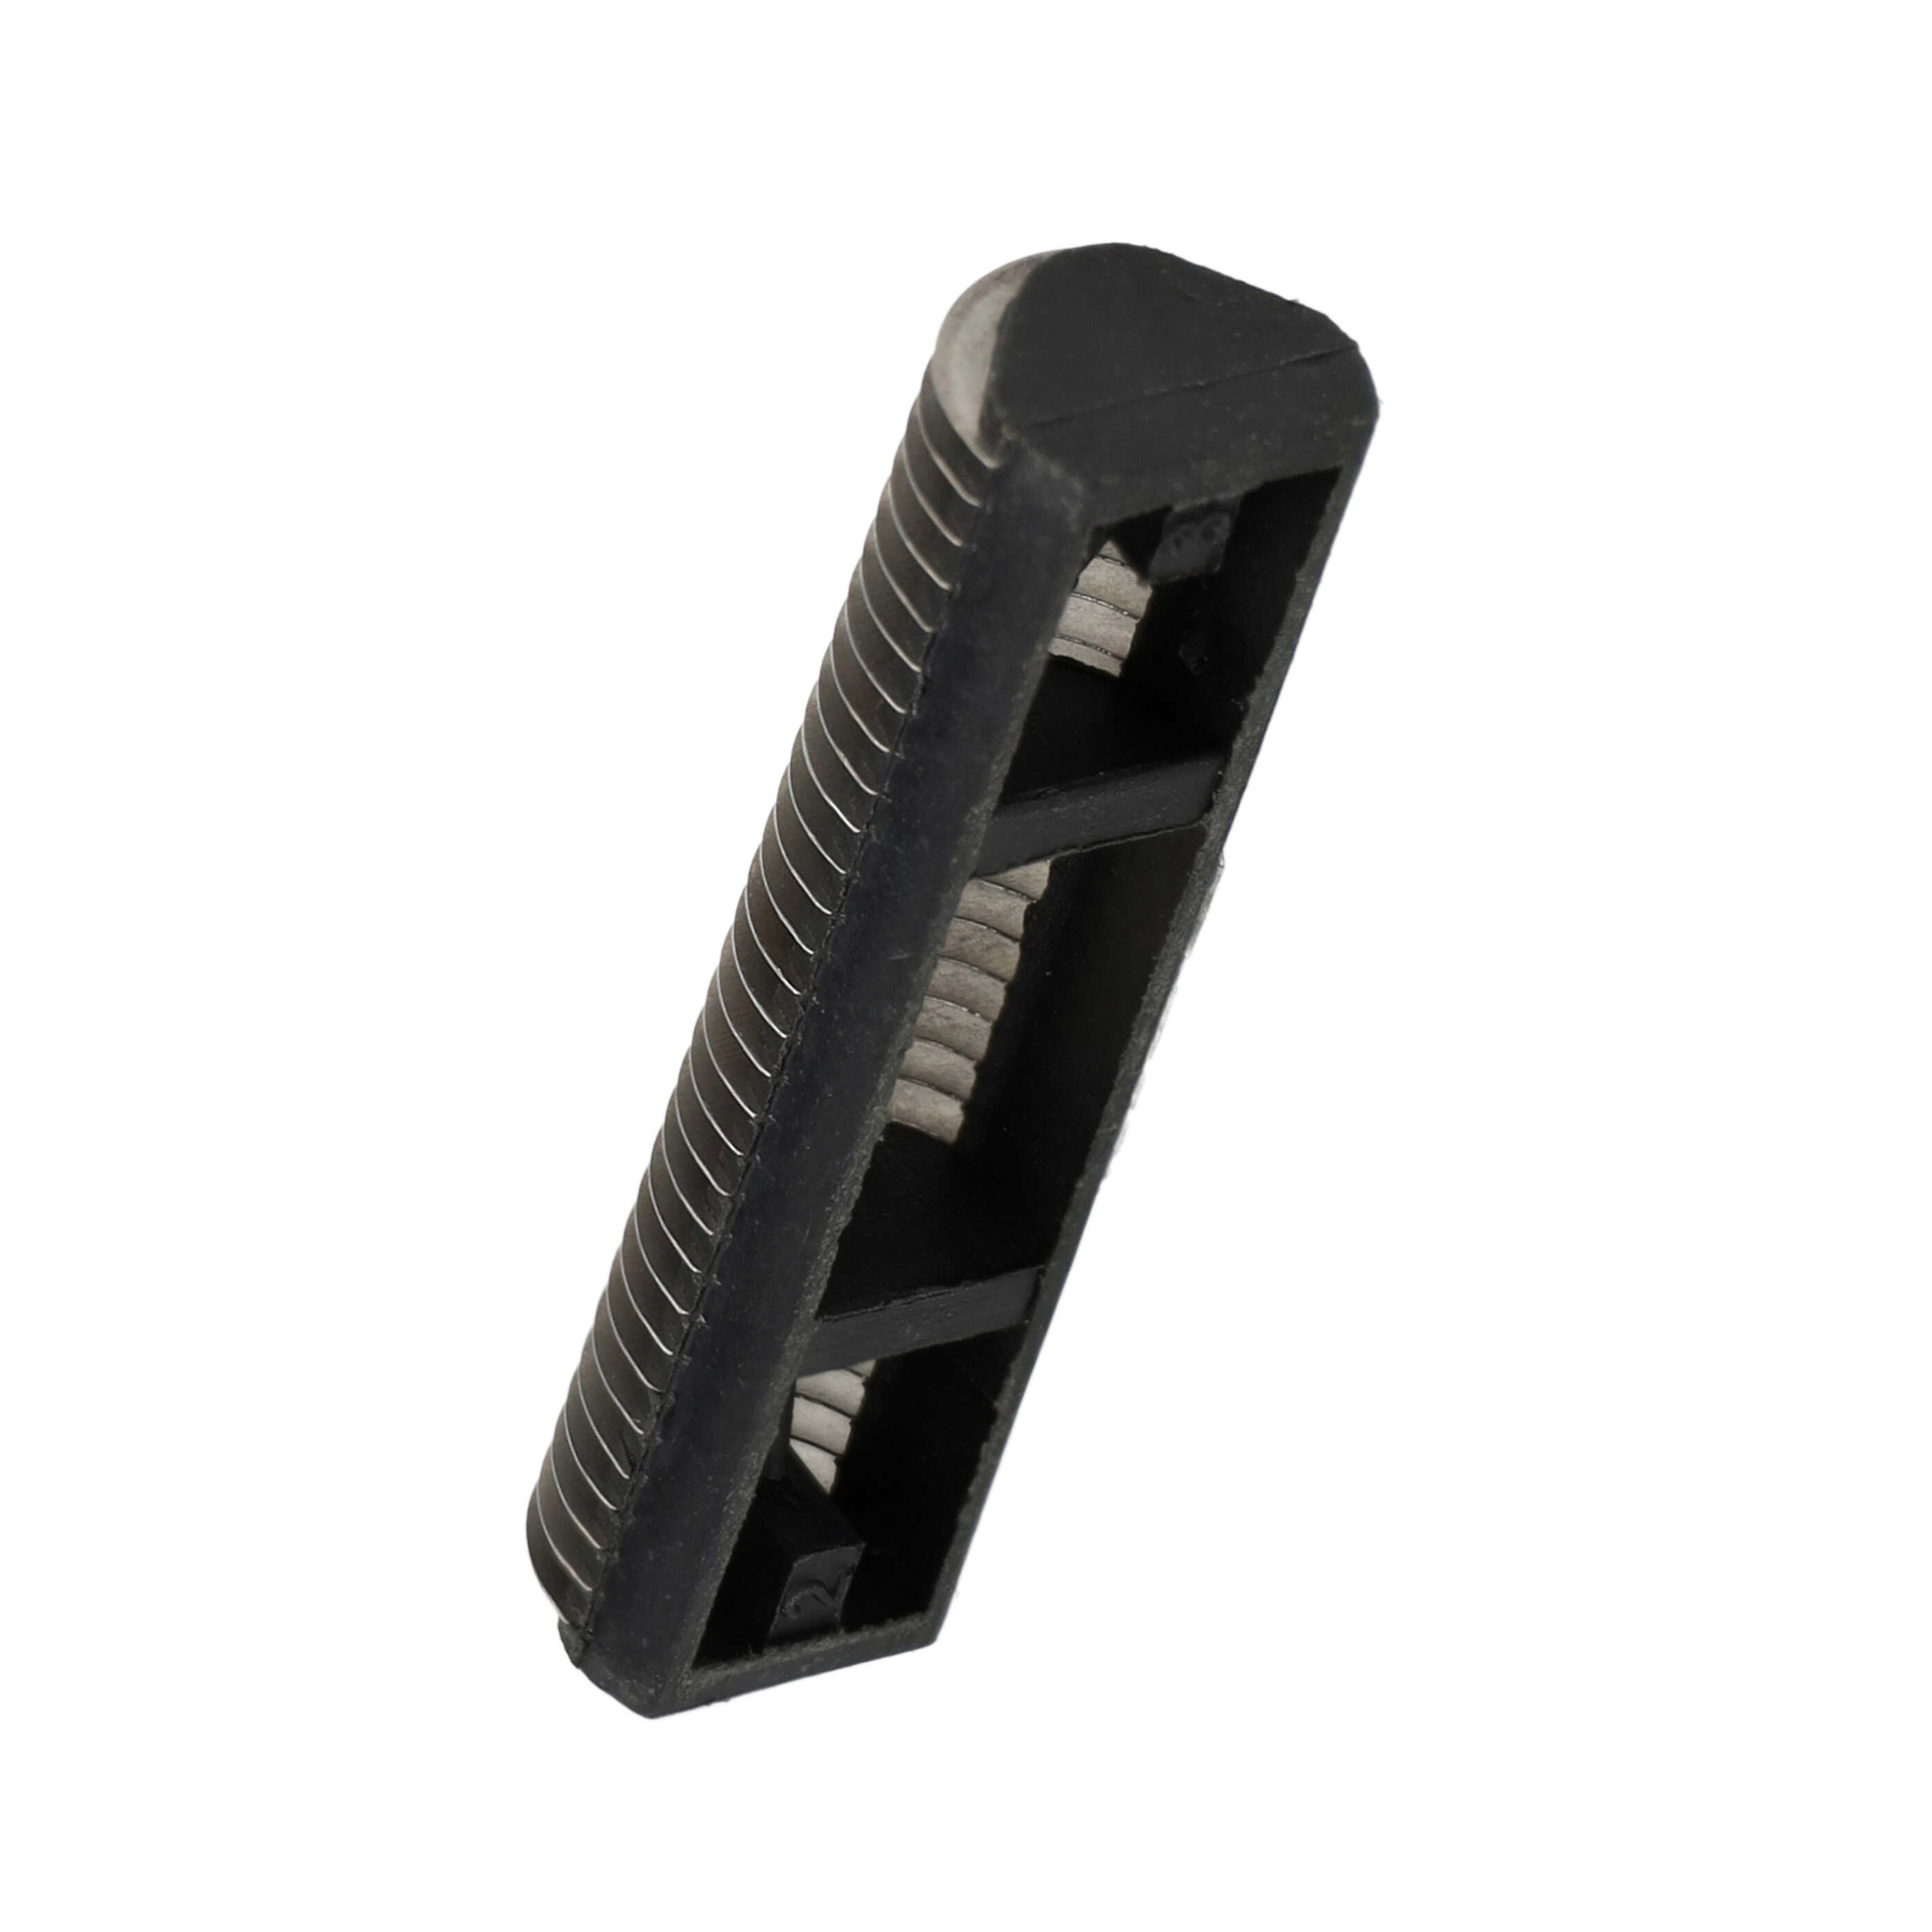 Combipack remplace Braun 5S pour rasoir Braun - grille + couteaux, noir/argenté